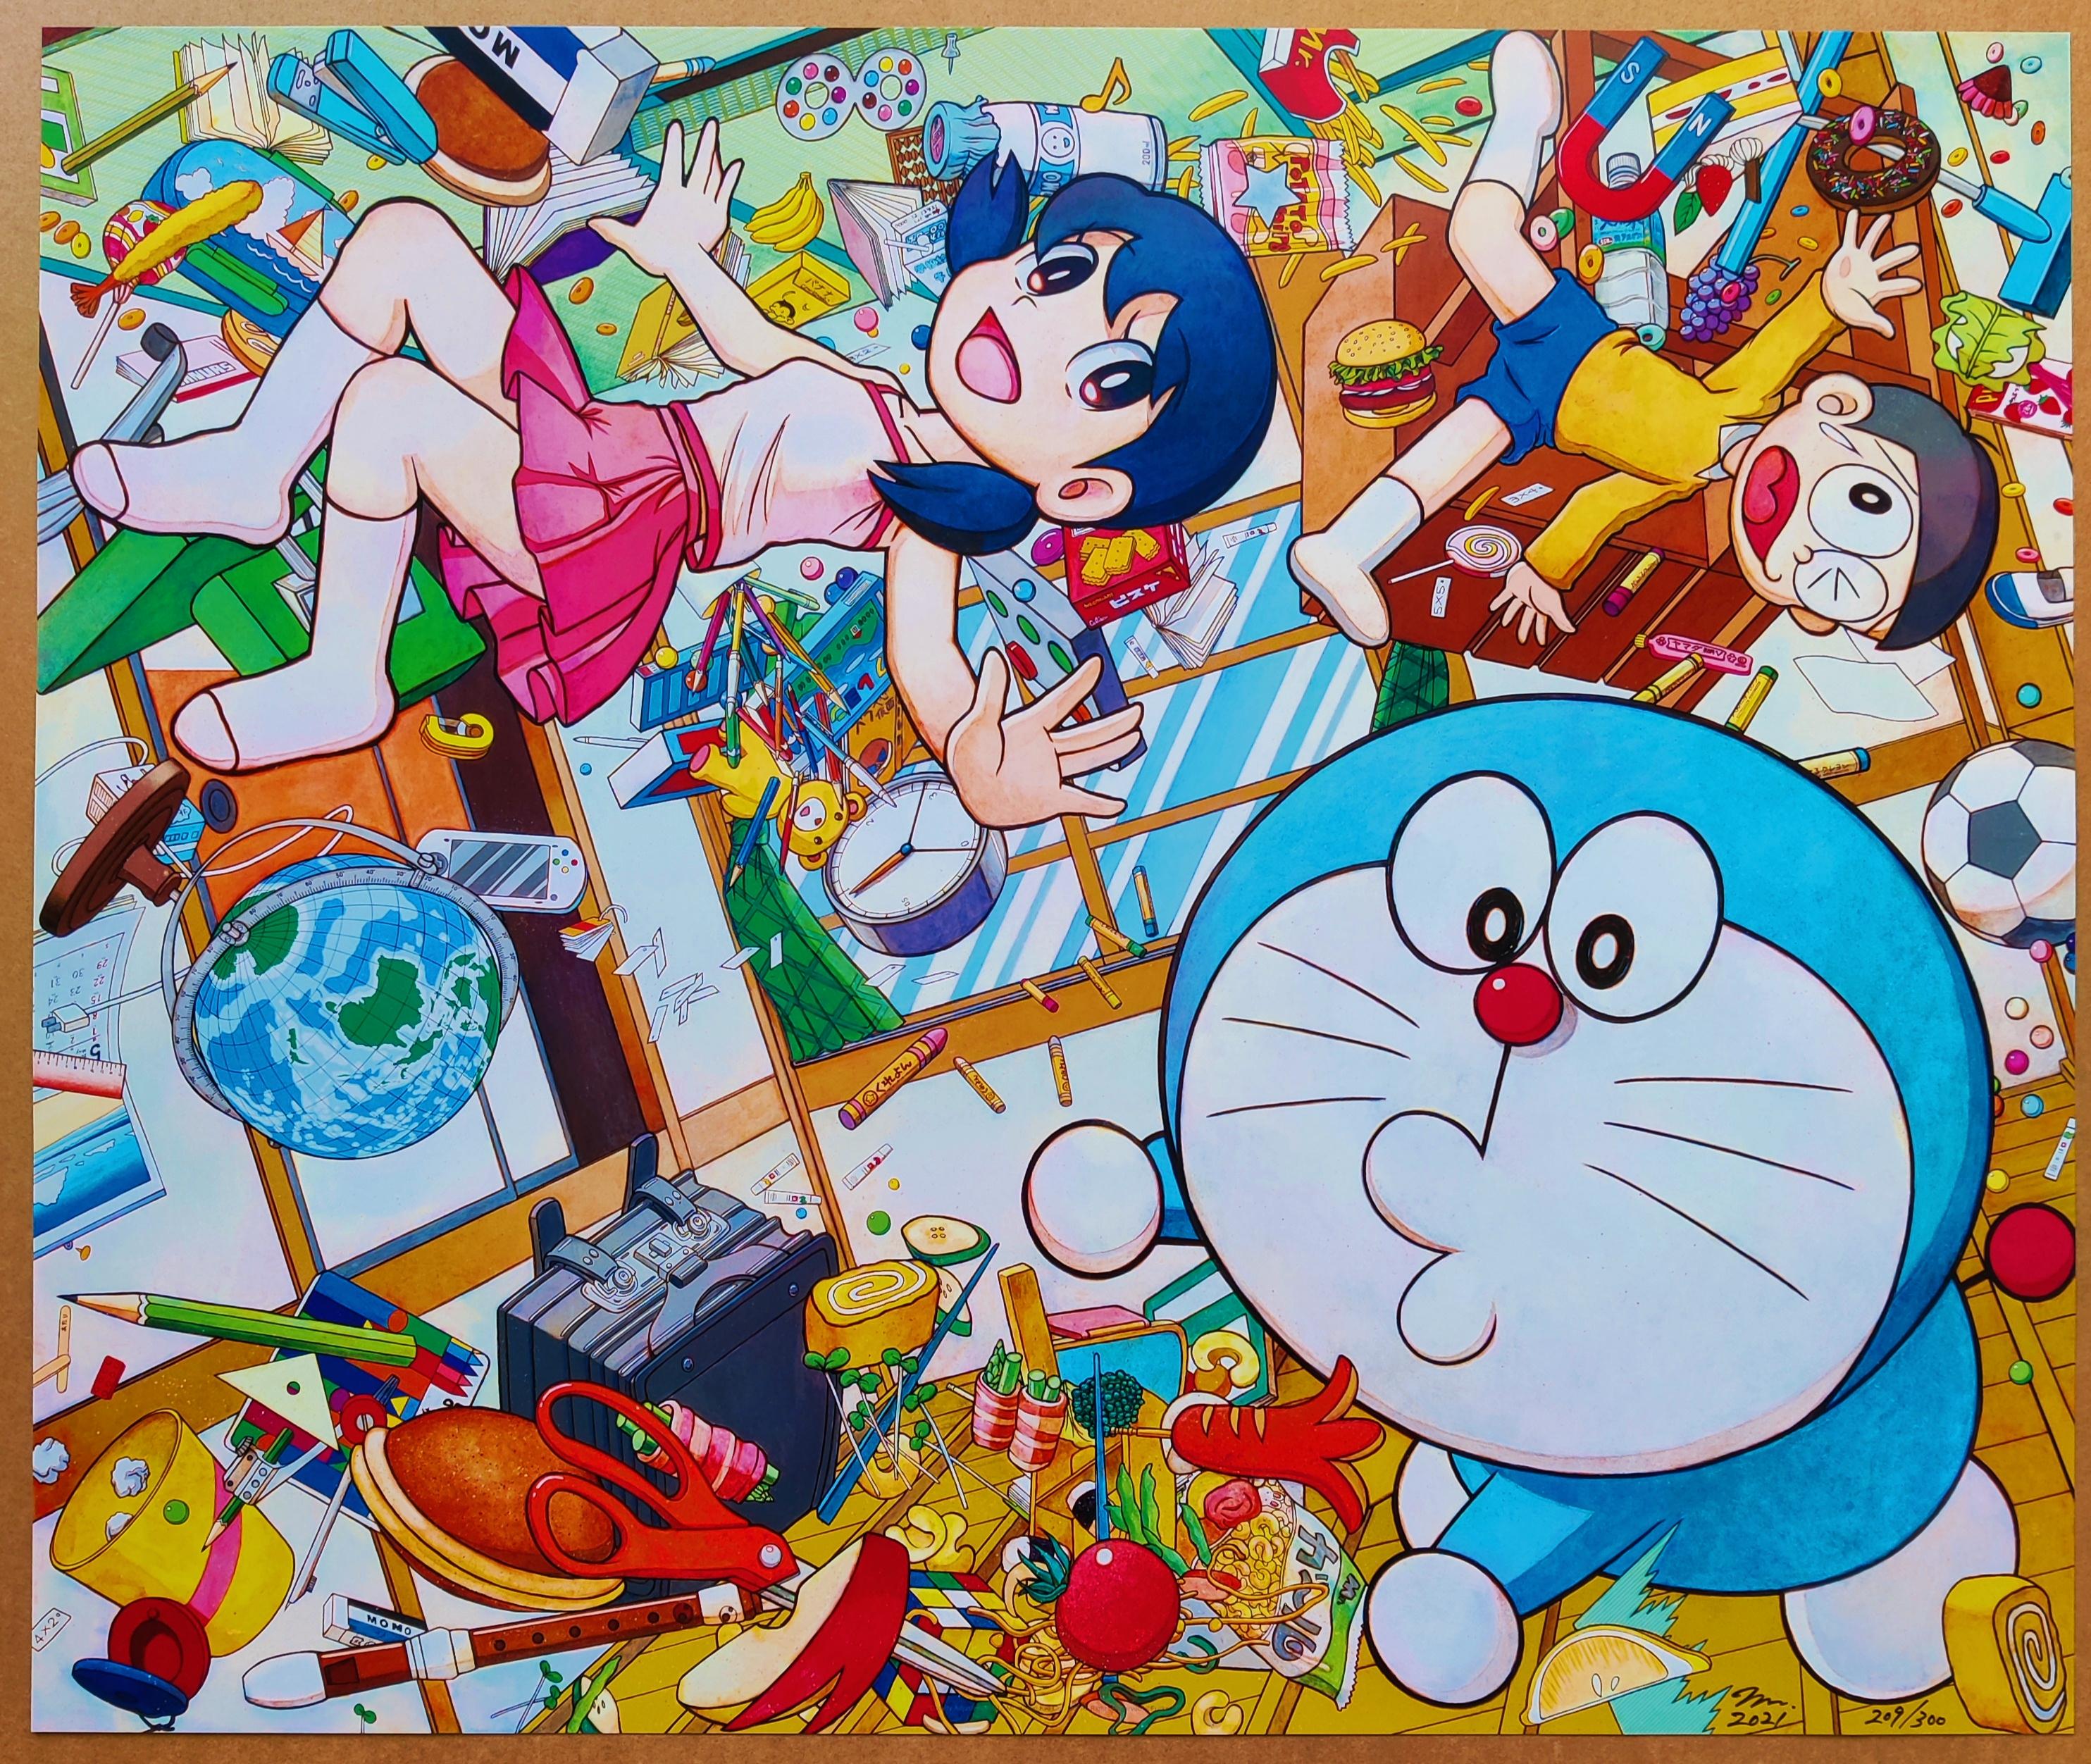 Takashi Murakami
Schwerkraftregulierer (Mr. Doraemon), 2021
Offsetlithographie
Auflage: 209/300
Größe: 60 x 40 cm
Handsigniert & nummeriert von Takashi Murakami
Das Kunstwerk ist in ausgezeichnetem Zustand.
Rahmung ist eine Option, wird mit dem